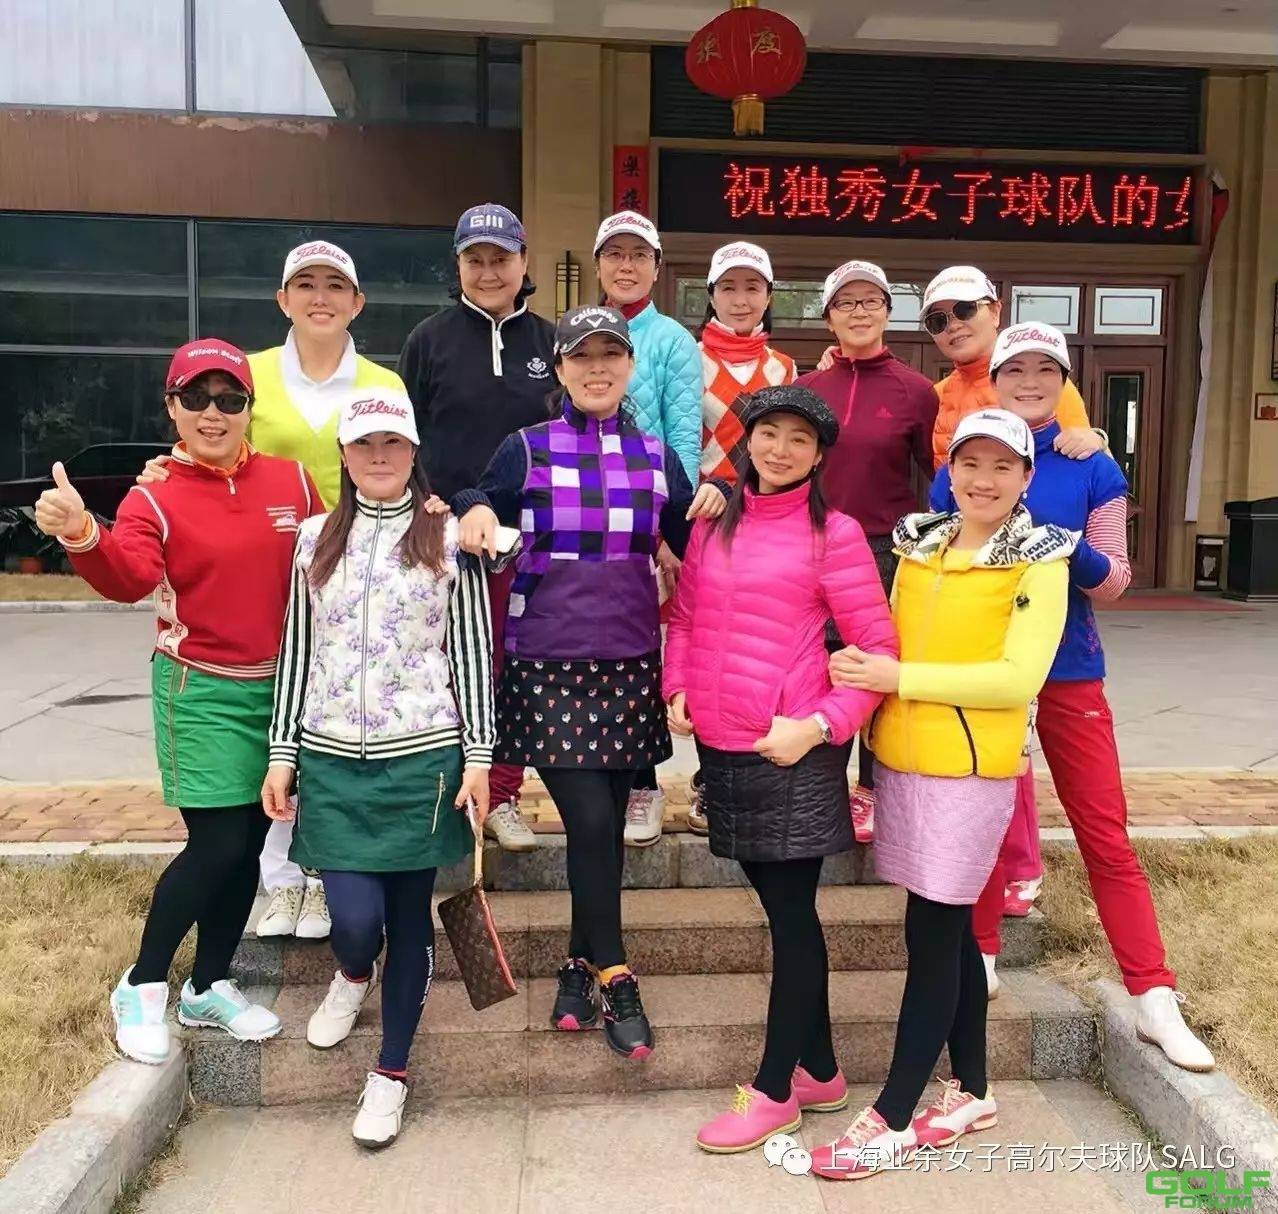 2017大中华女子高尔夫球赛-赛事手册